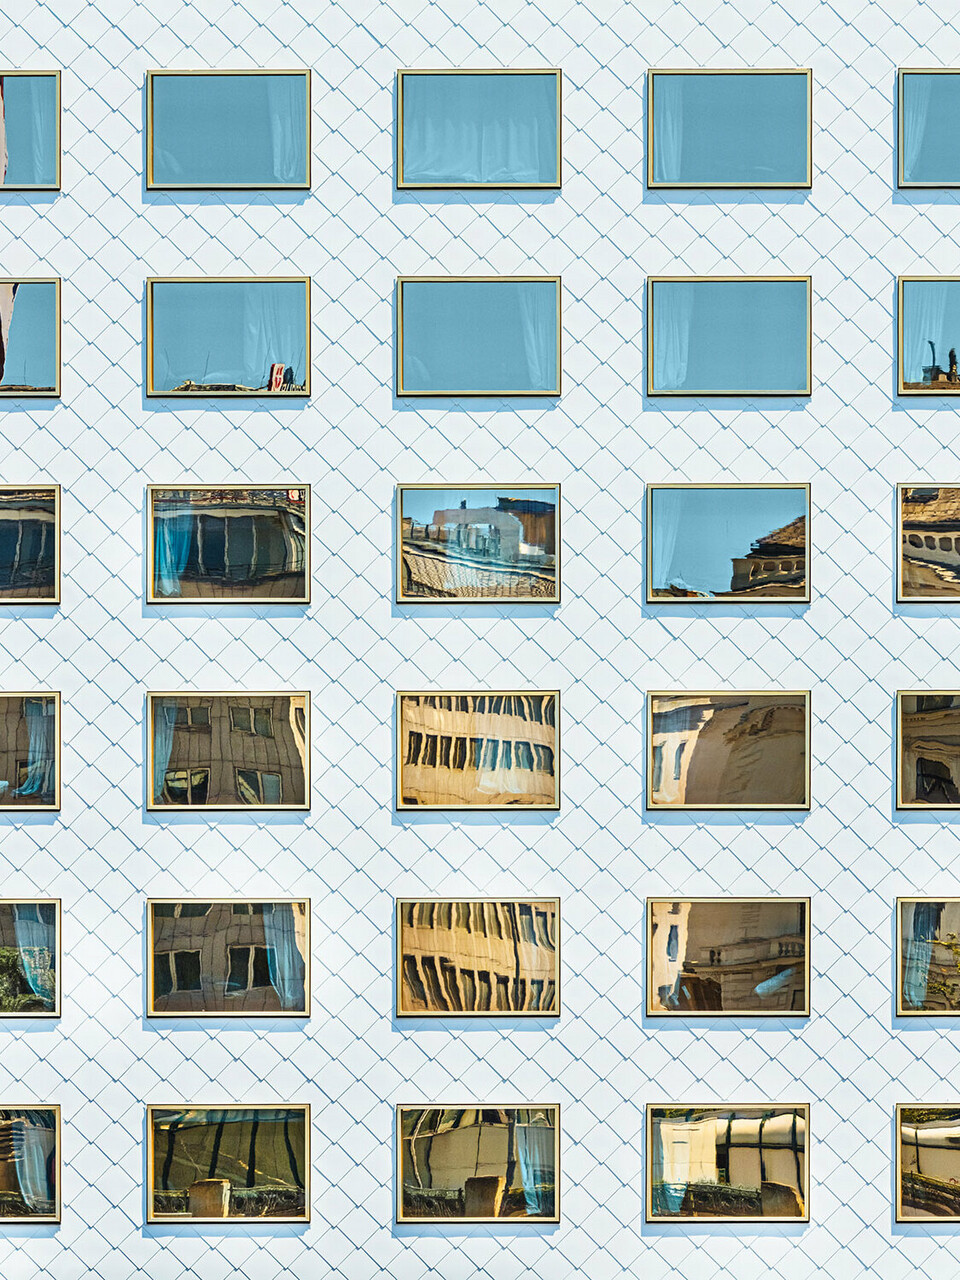 Die Fassade des Hotels THE ROCK Radisson RED Vienna, entworfen von INNOCAD architecture, aus der Normalperspektive; zu sehen sind etliche reinweiße Wandrauten und spiegelverglaste Fenster, welche die Umgebung in sich aufnehmen.